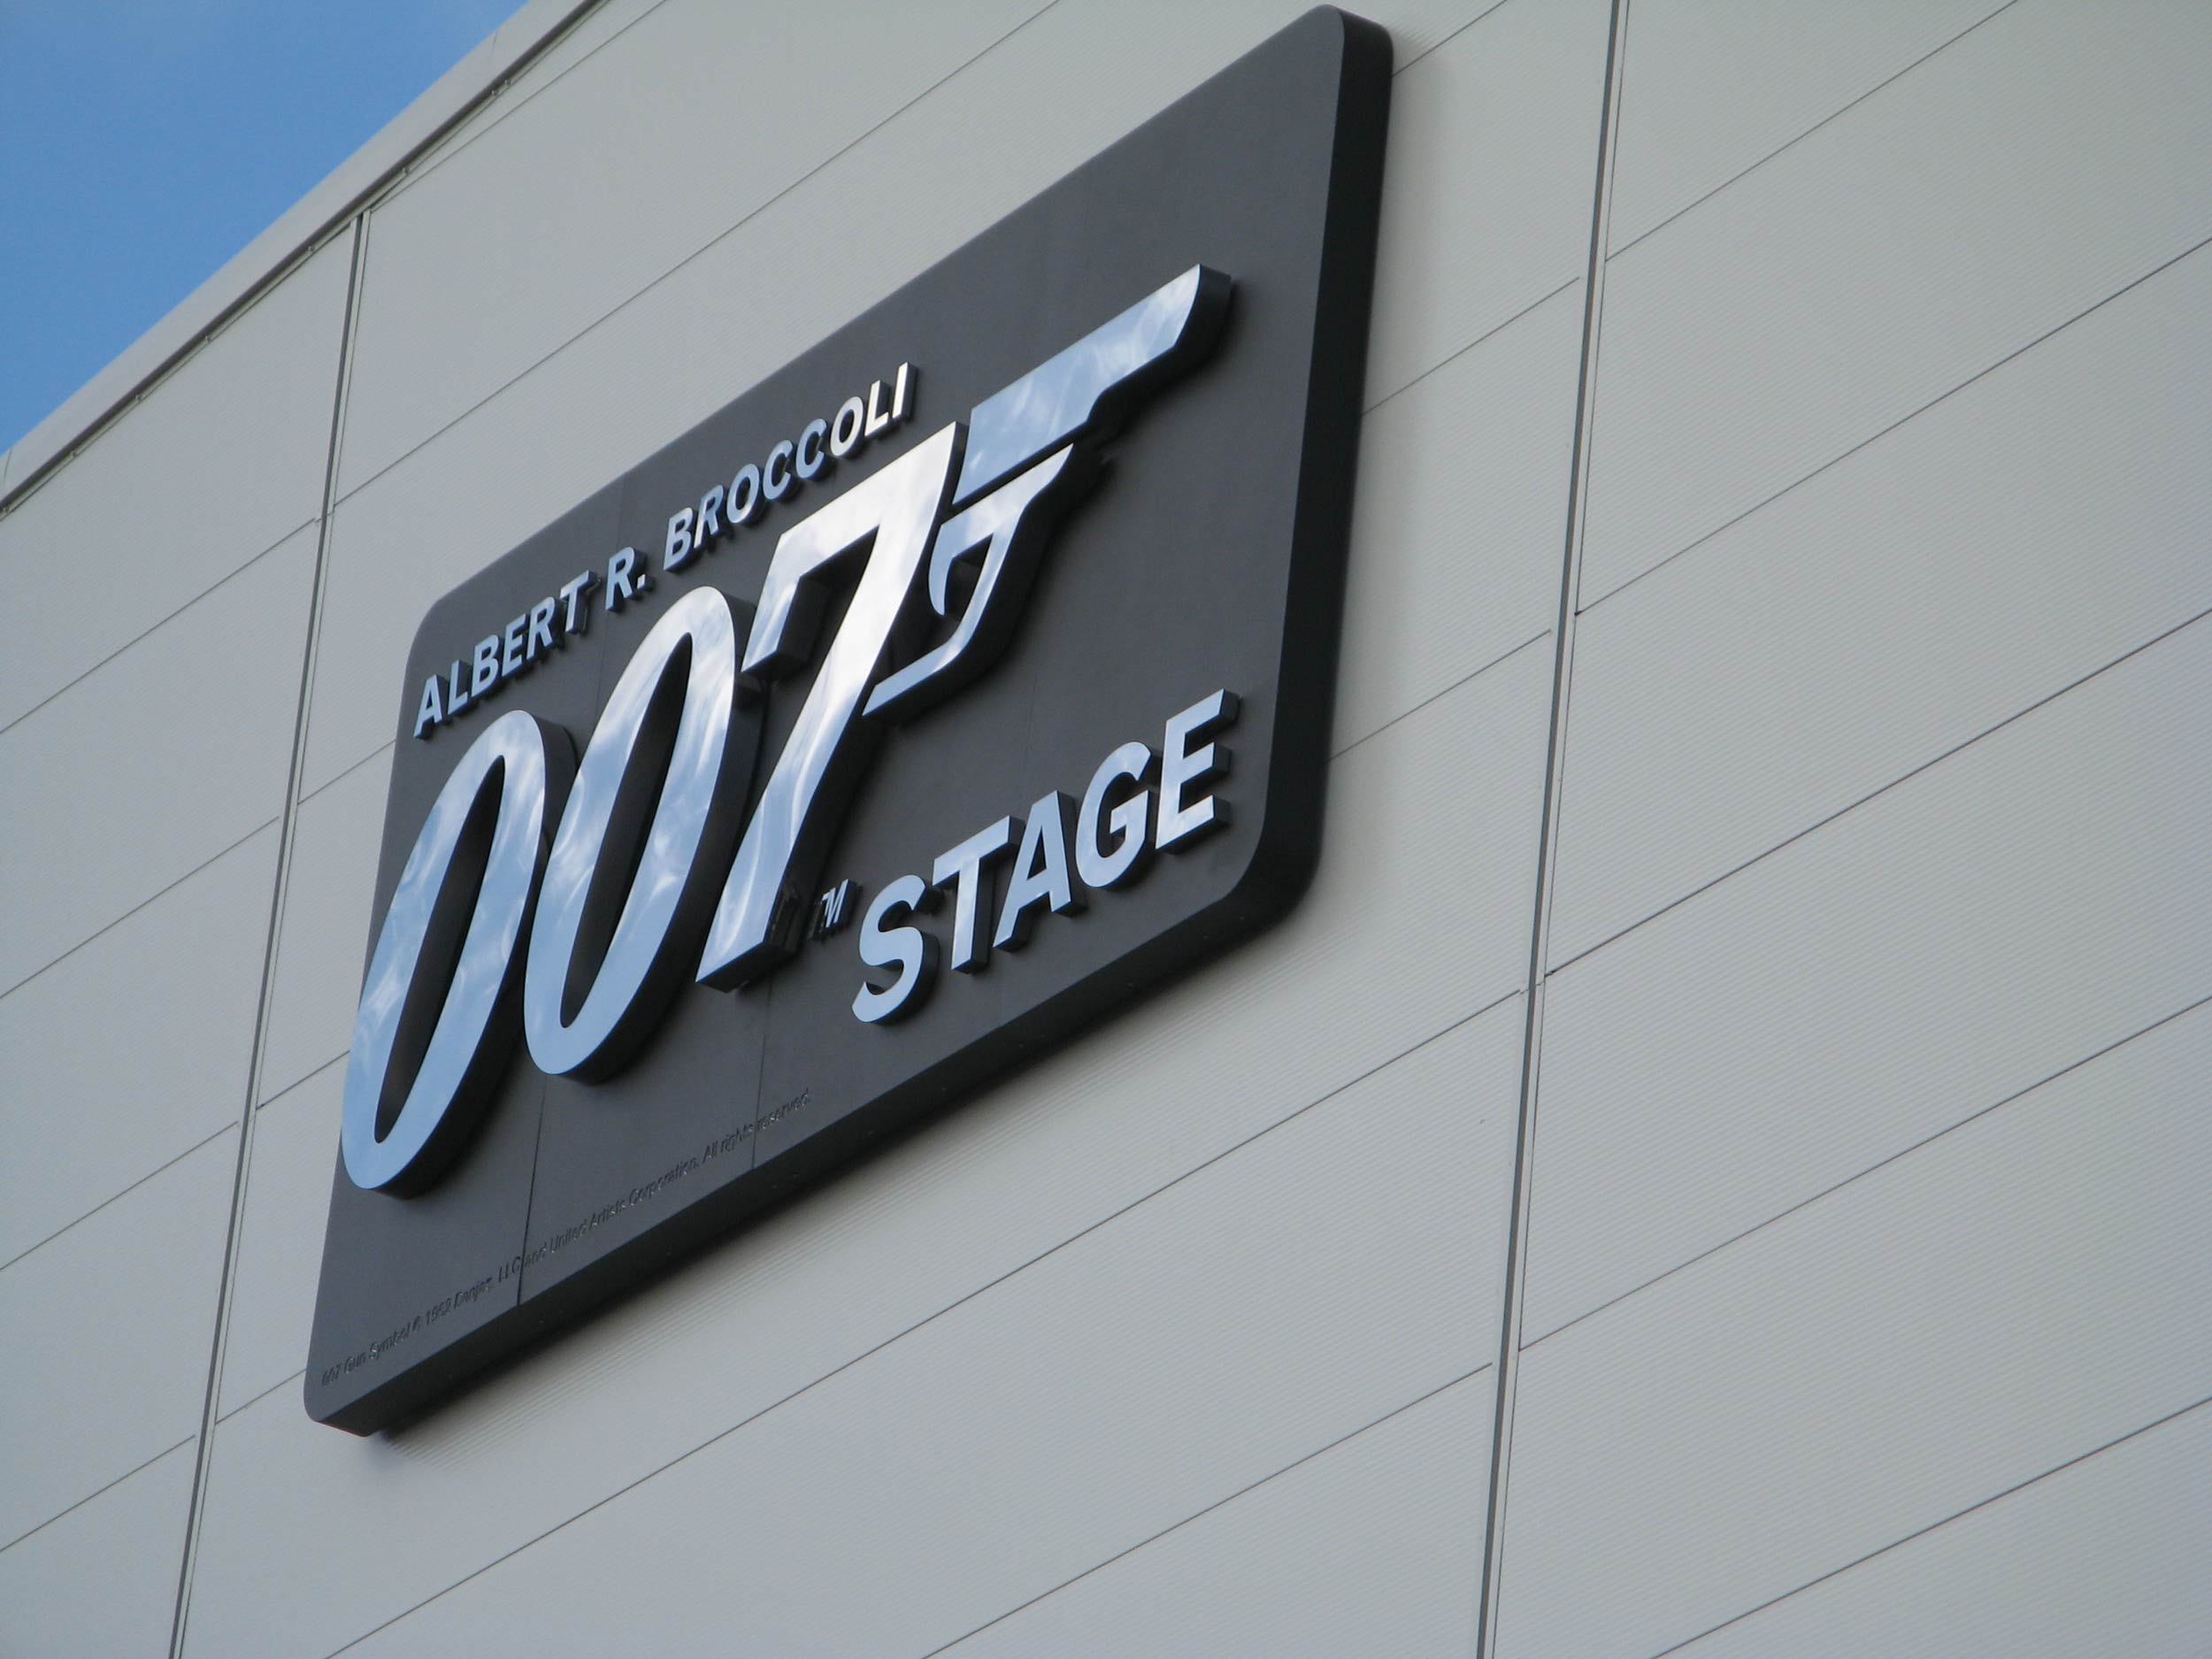 Pinewood-Studios-007-Stage-03.jpg